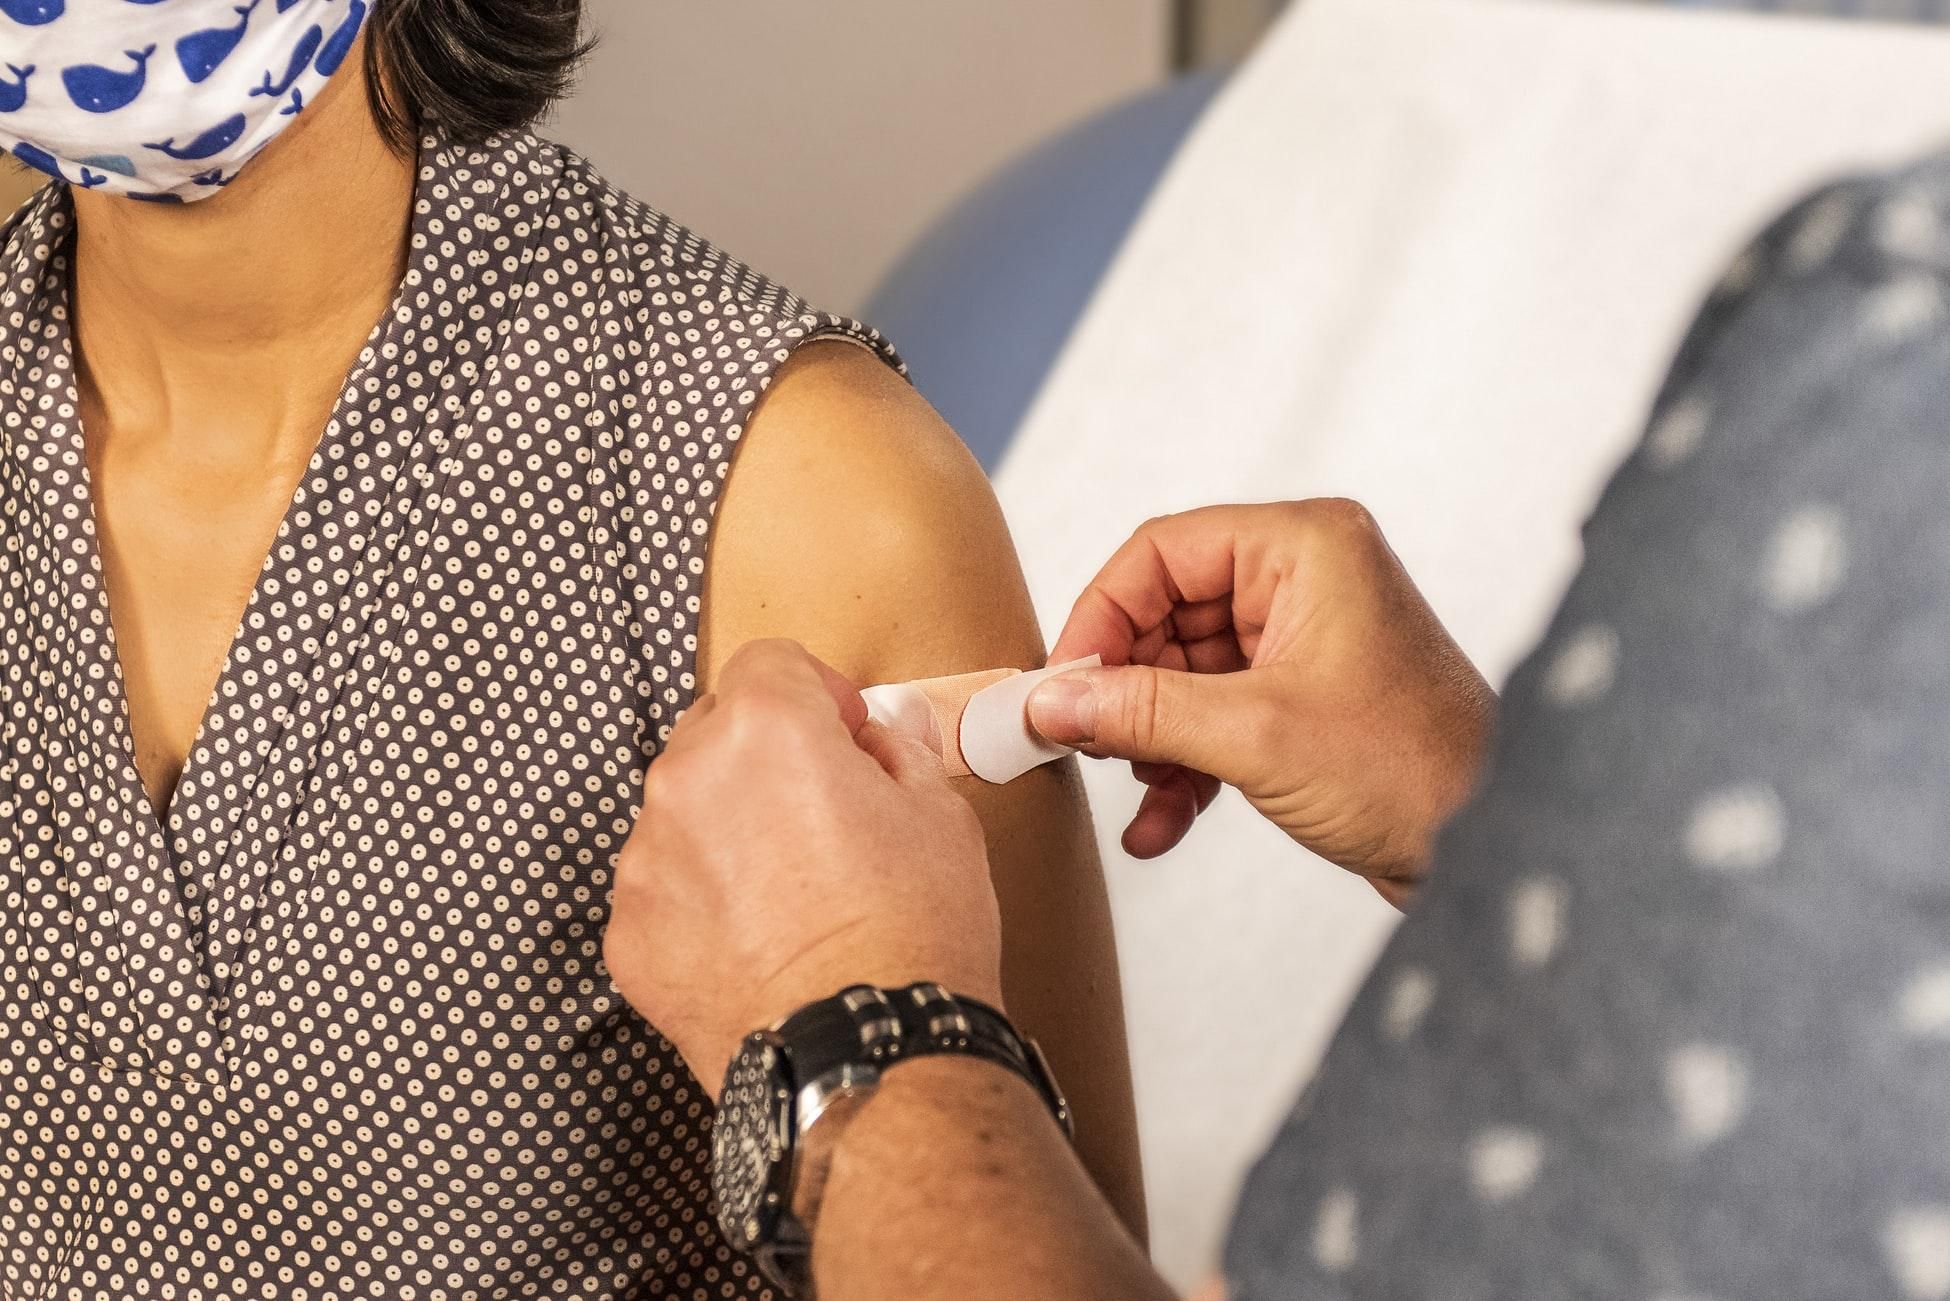 Двум пенсионеркам случайно вкололи три дозы вакцины: детали инцидента в Японии